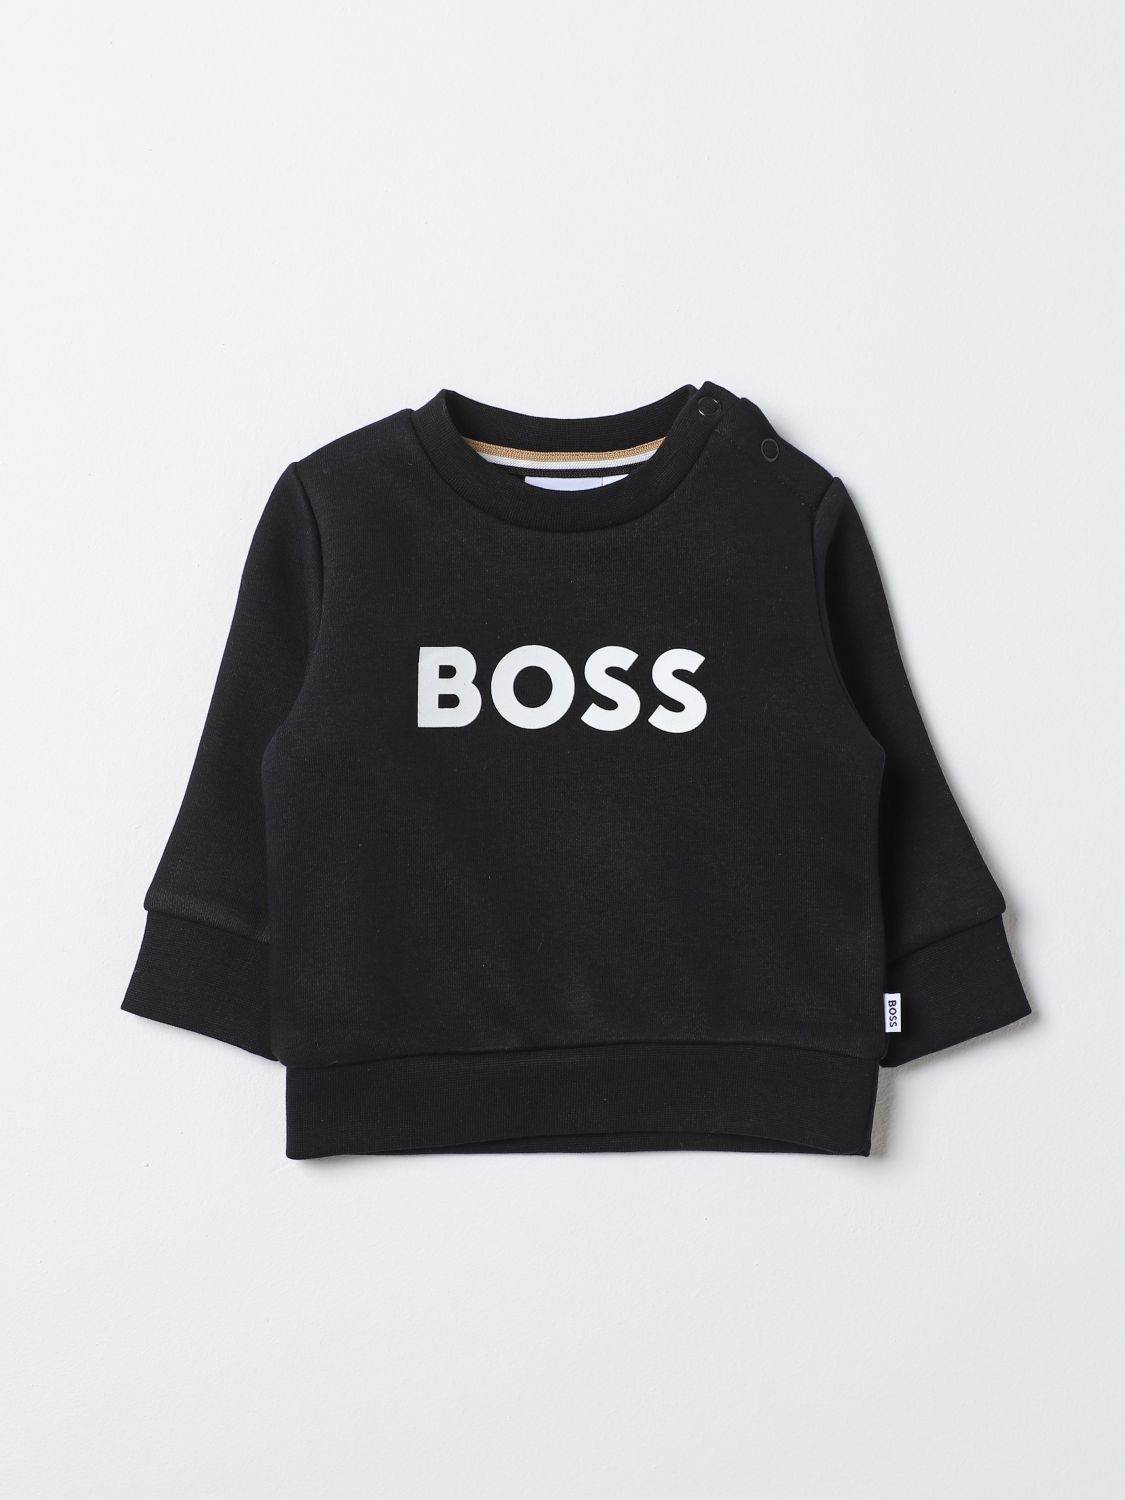 Bosswear Babies' Sweater Boss Kidswear Kids Color Black